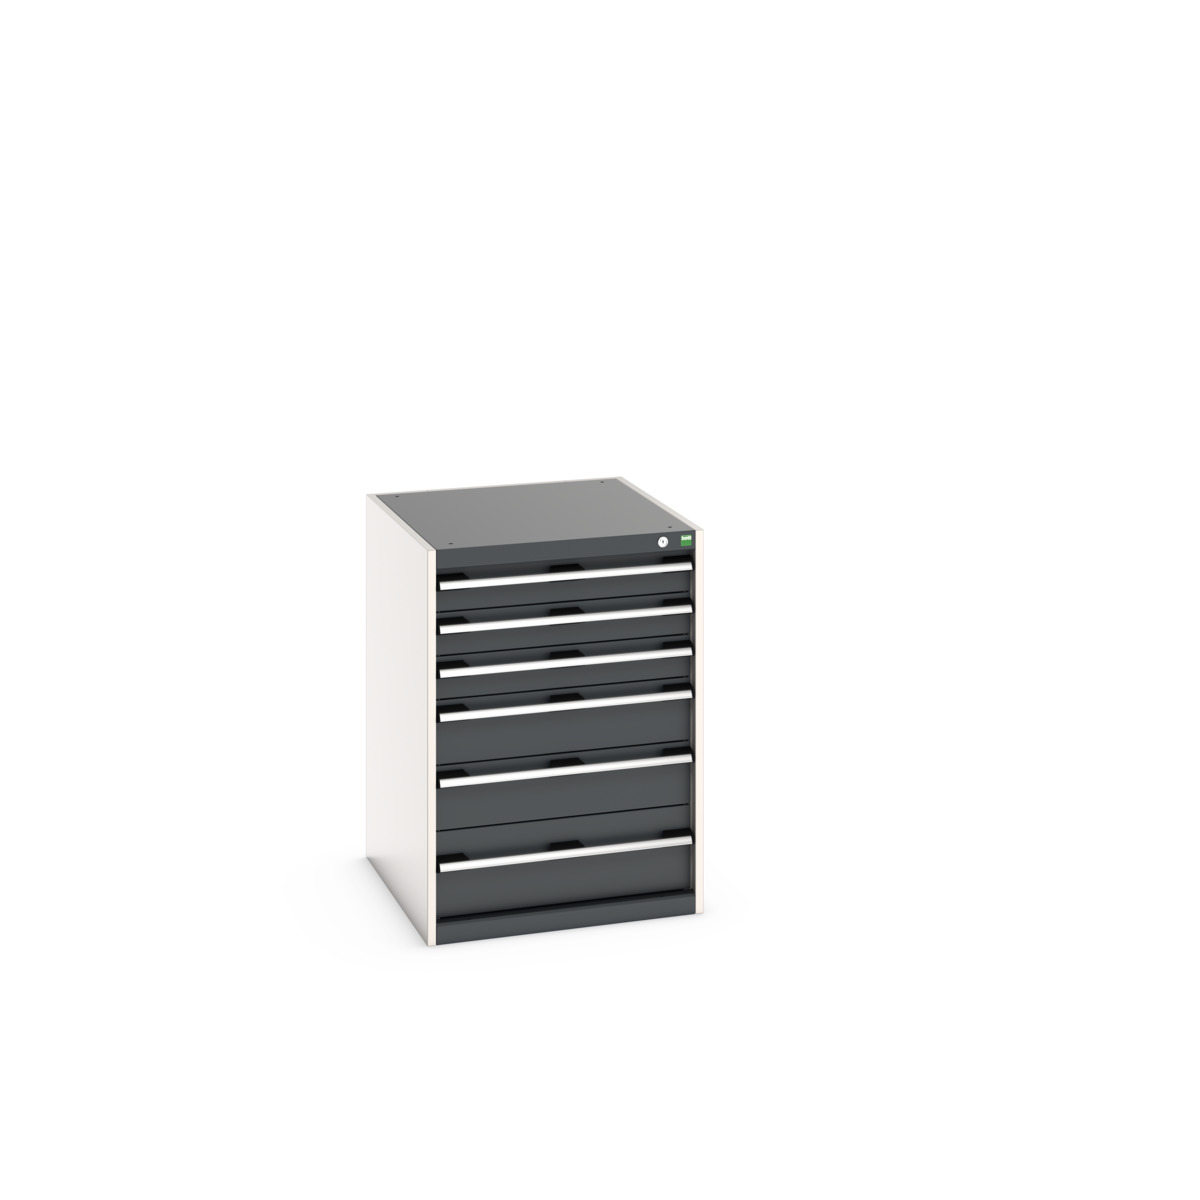 40027088.19V - cubio drawer cabinet